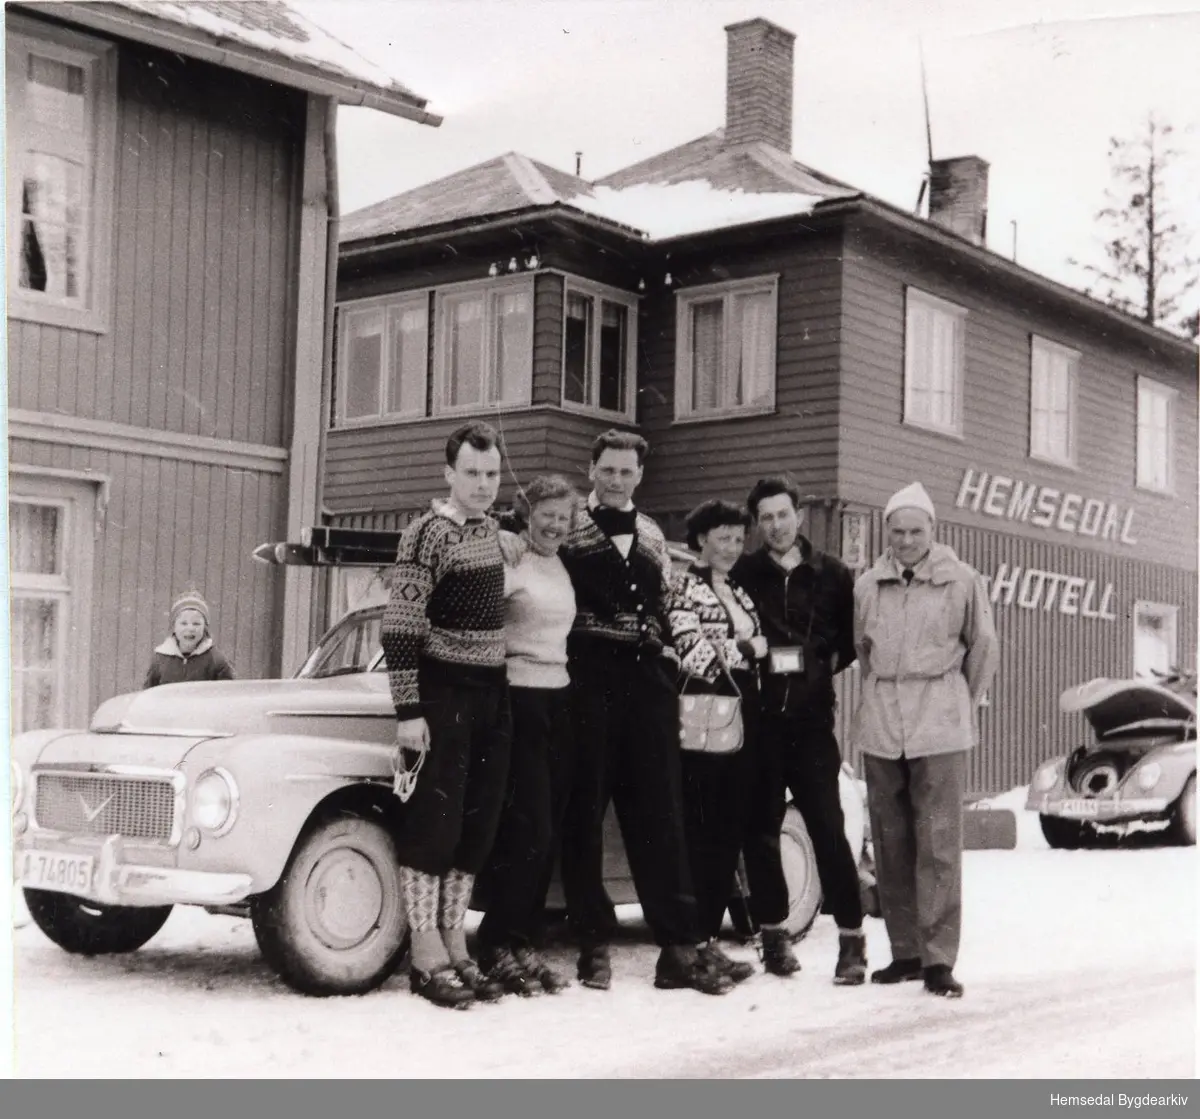 Hemsedal Hotell (tidlegare Kirkebø Hotell) i Trøym,ca. 1966.
Gjester